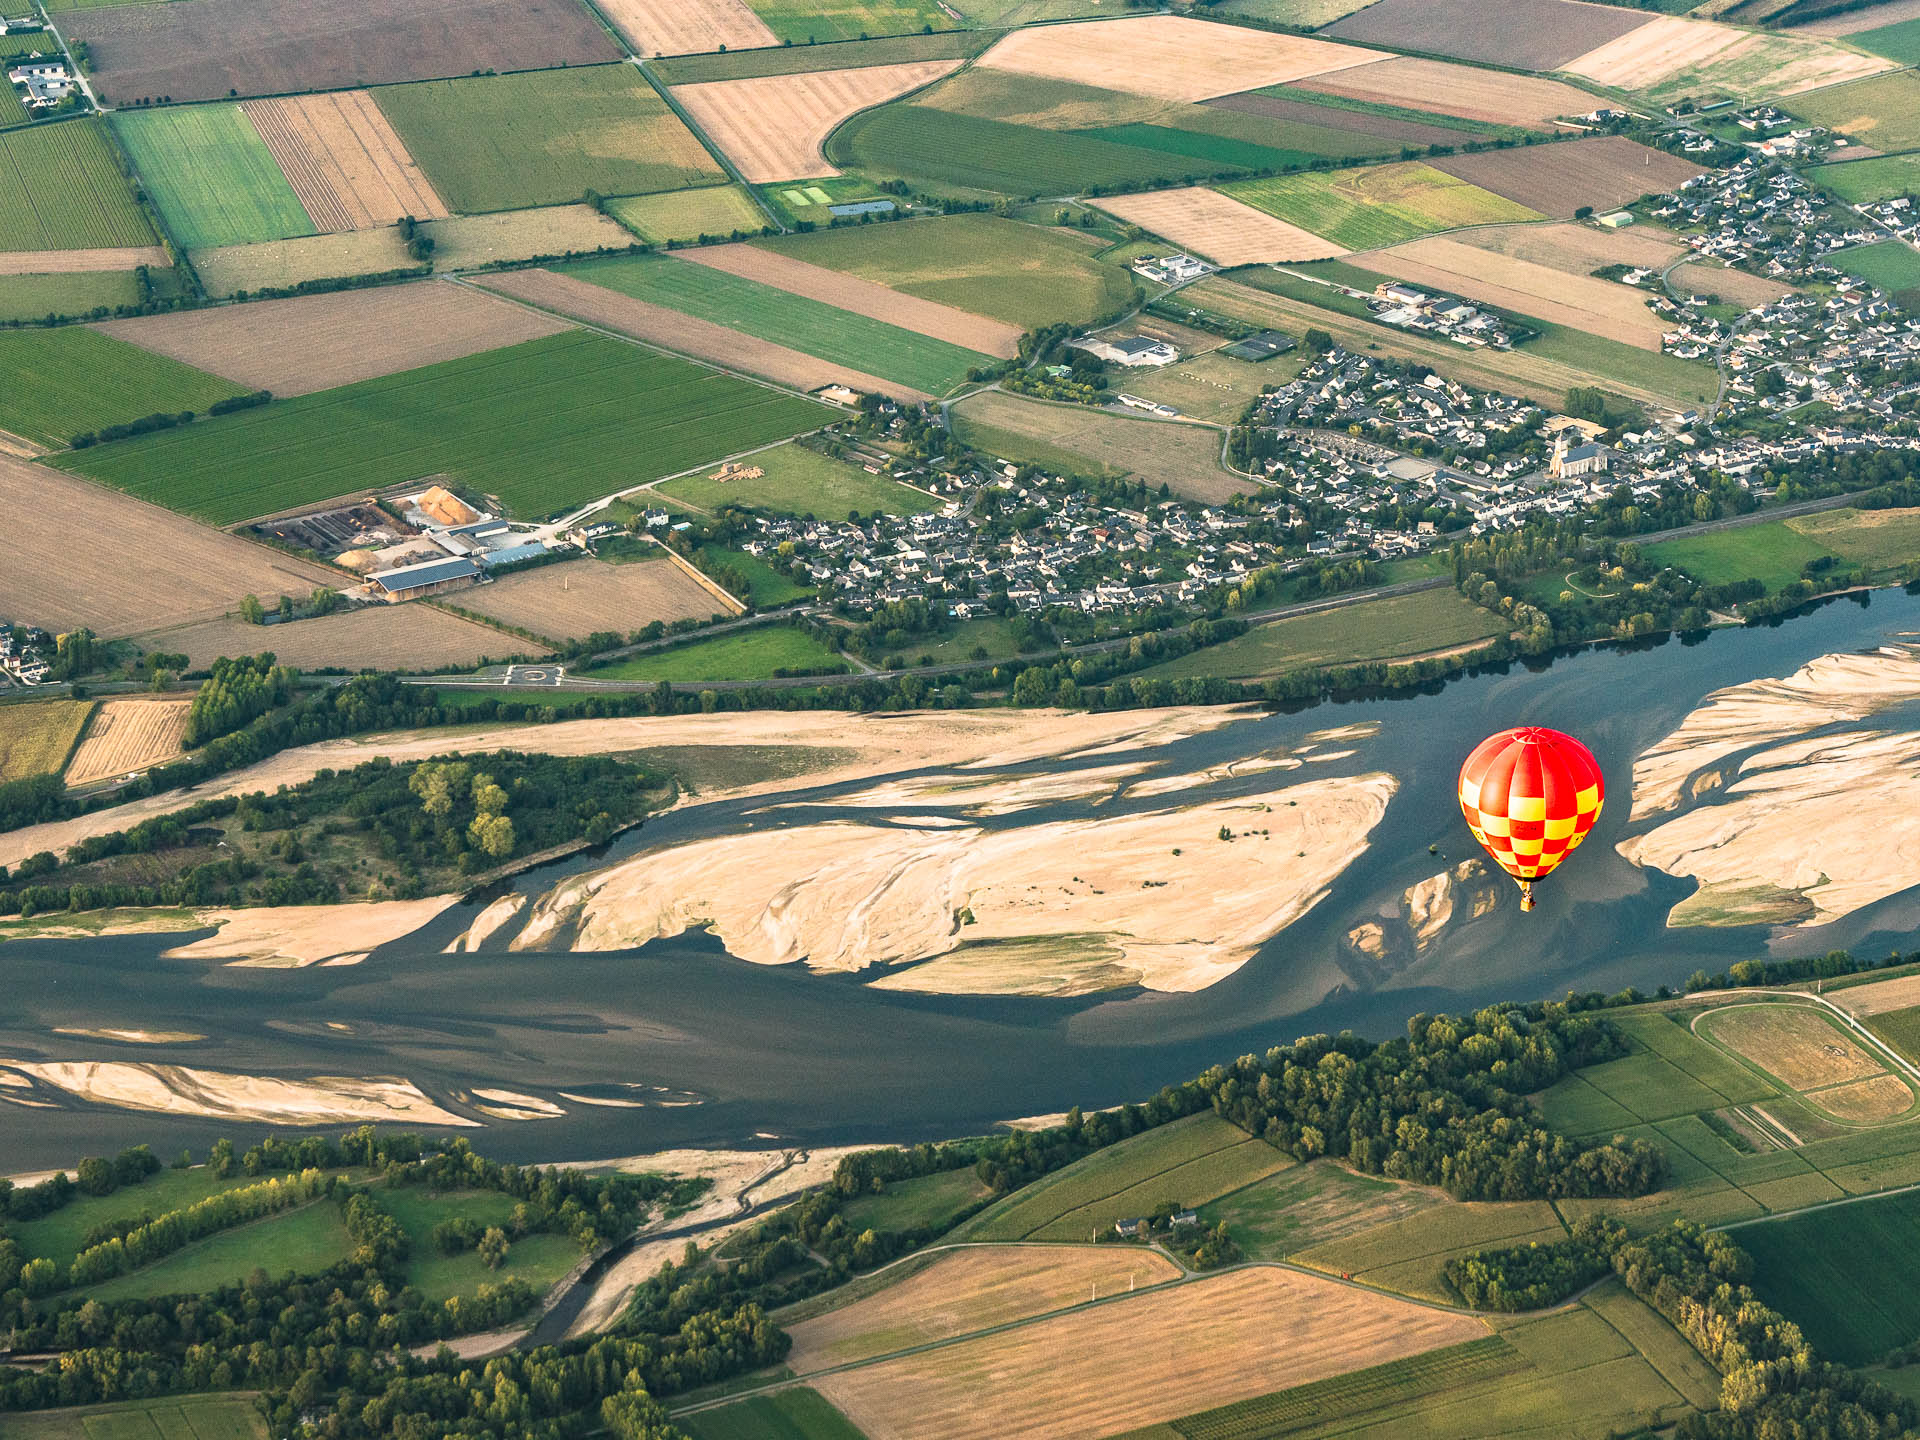 BAptême de montgolfière au dessus de la Loire à Brissac près d'Angers